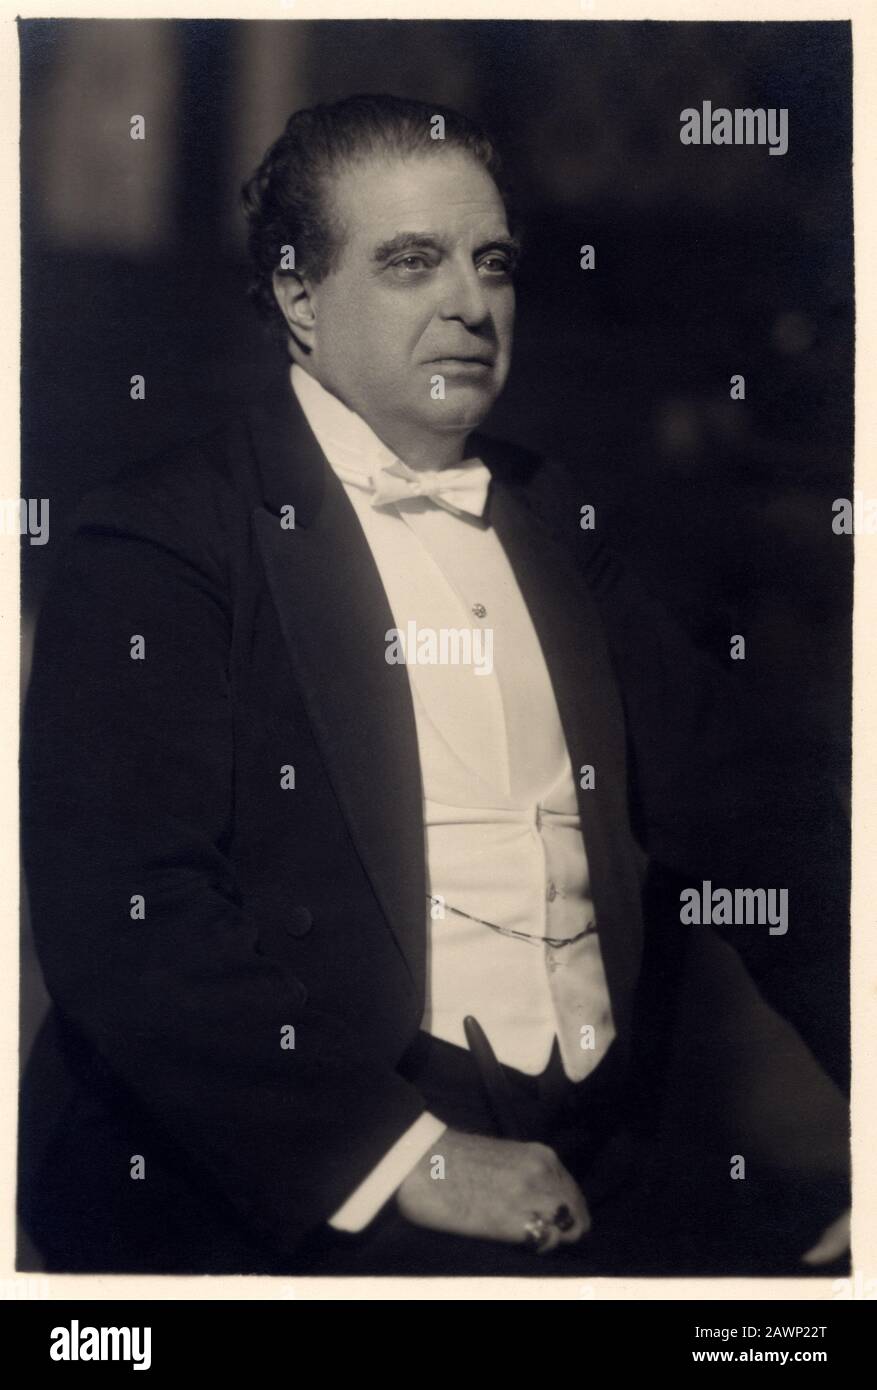 1931 ca , ITALIA : il celebre compositore di musica italiana PIETRO MASCAGNI ( 1863 - 1945 ) . - OPERA LIRICA VERISTA - COMPOSITORE - MUSICA - PORTRAIT - Foto Stock